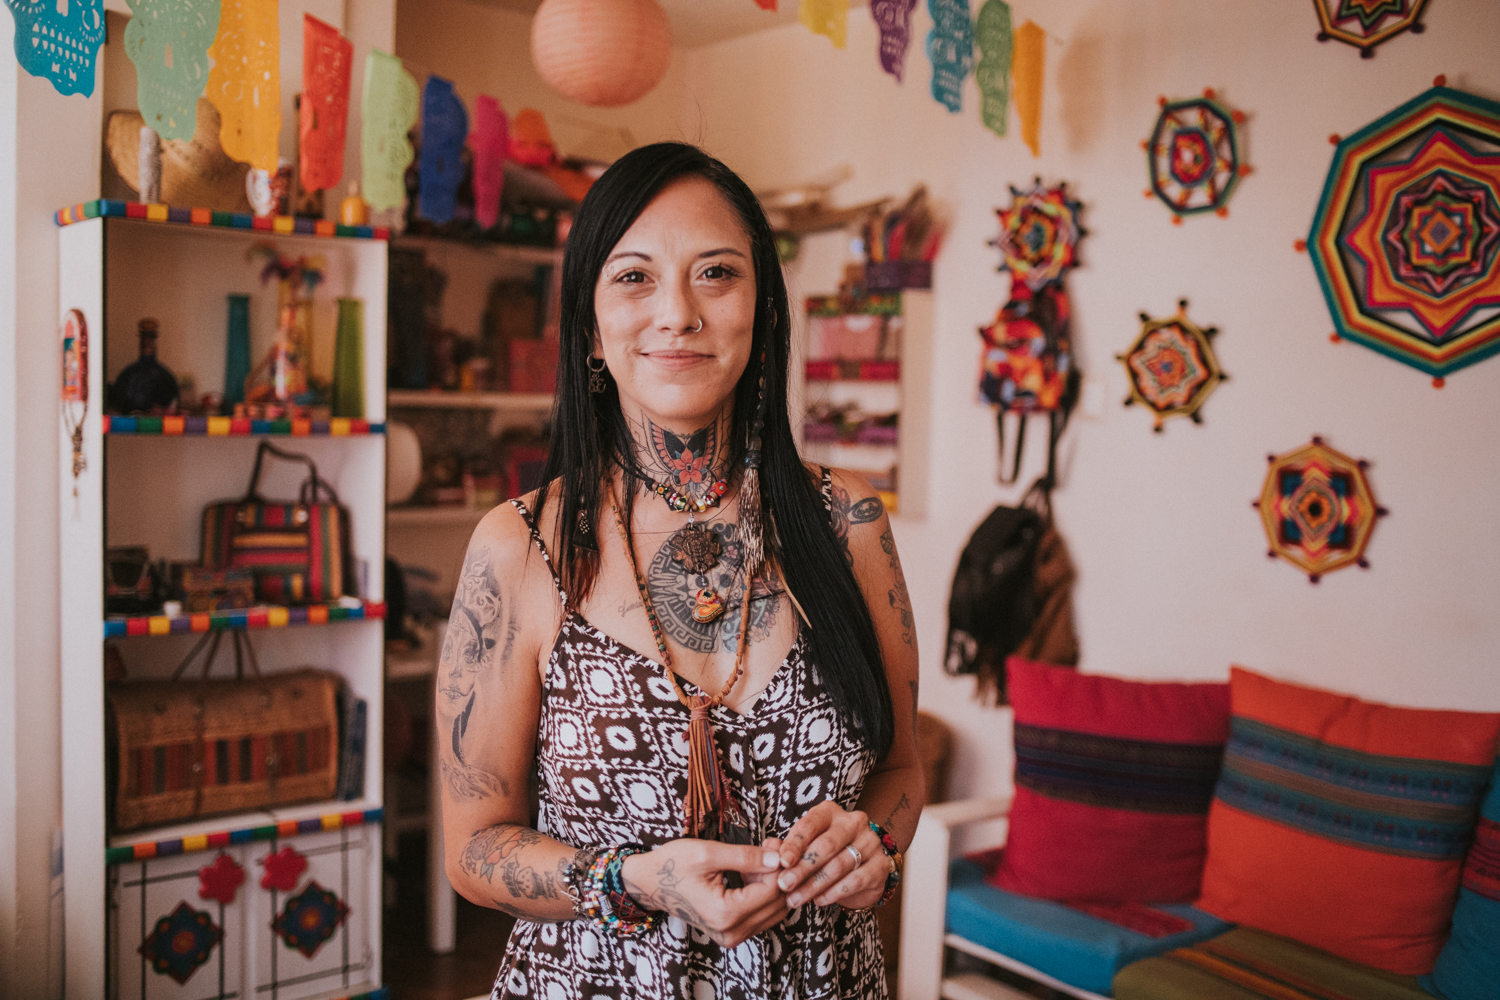 Johanna, anfitriona mexicana, mirando a la cámara de frente en su espacio decorado con tejidos y colores